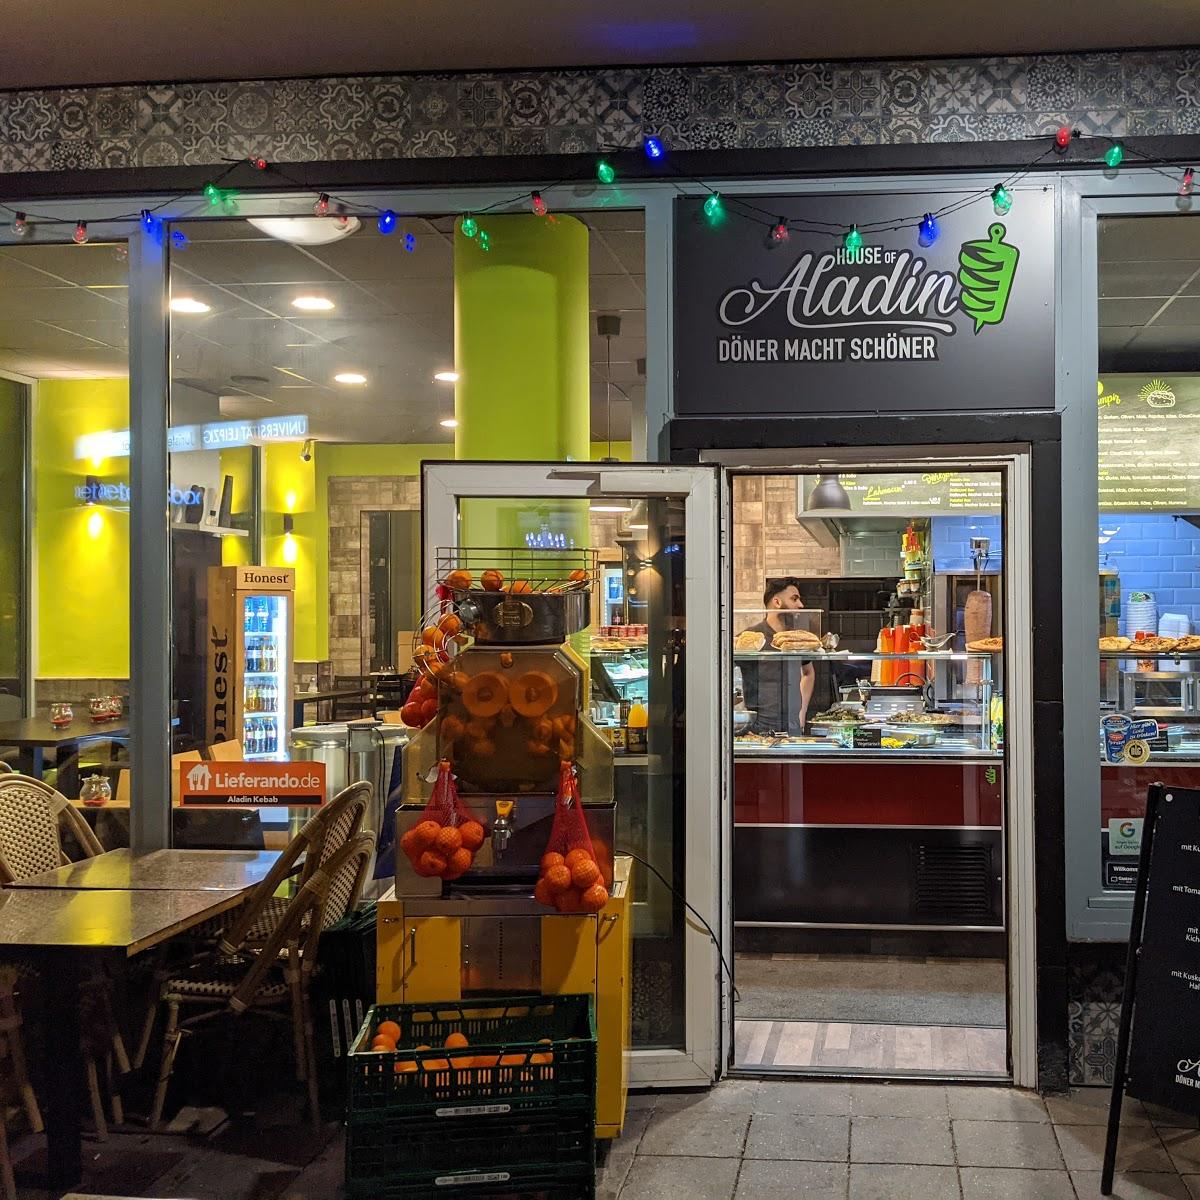 Restaurant "House of Aladin Döner" in Leipzig